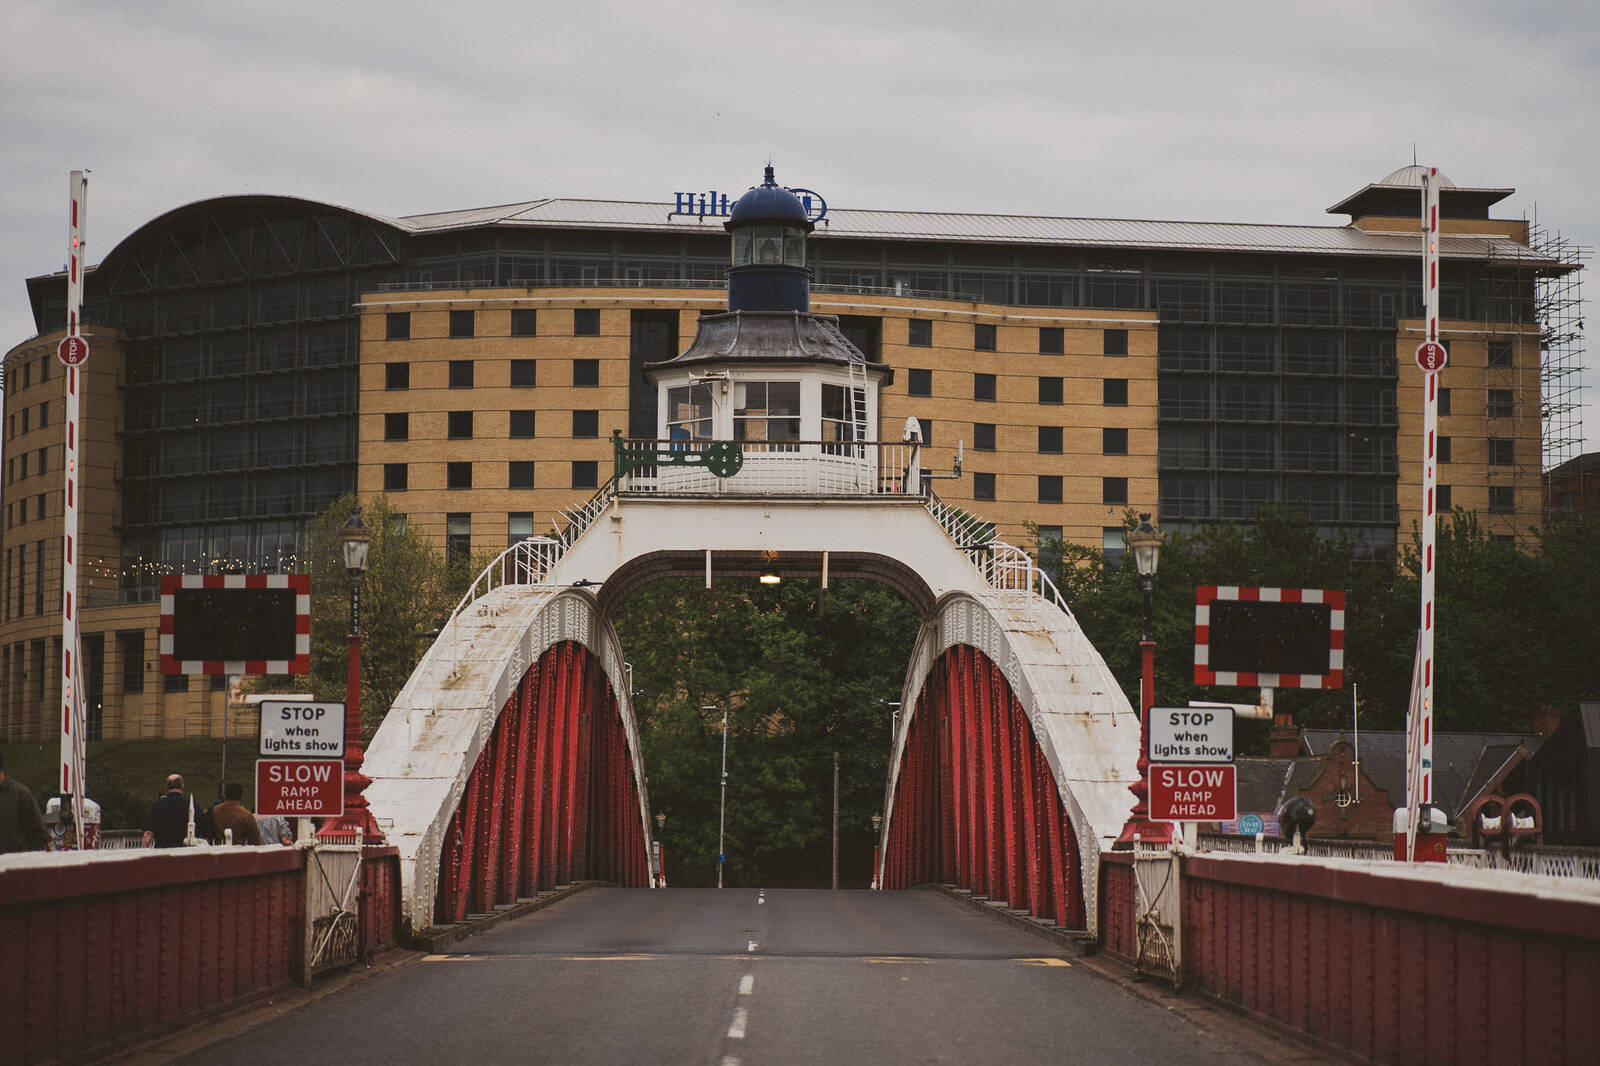 Image of River Tyne Swing Bridge by James Billings.